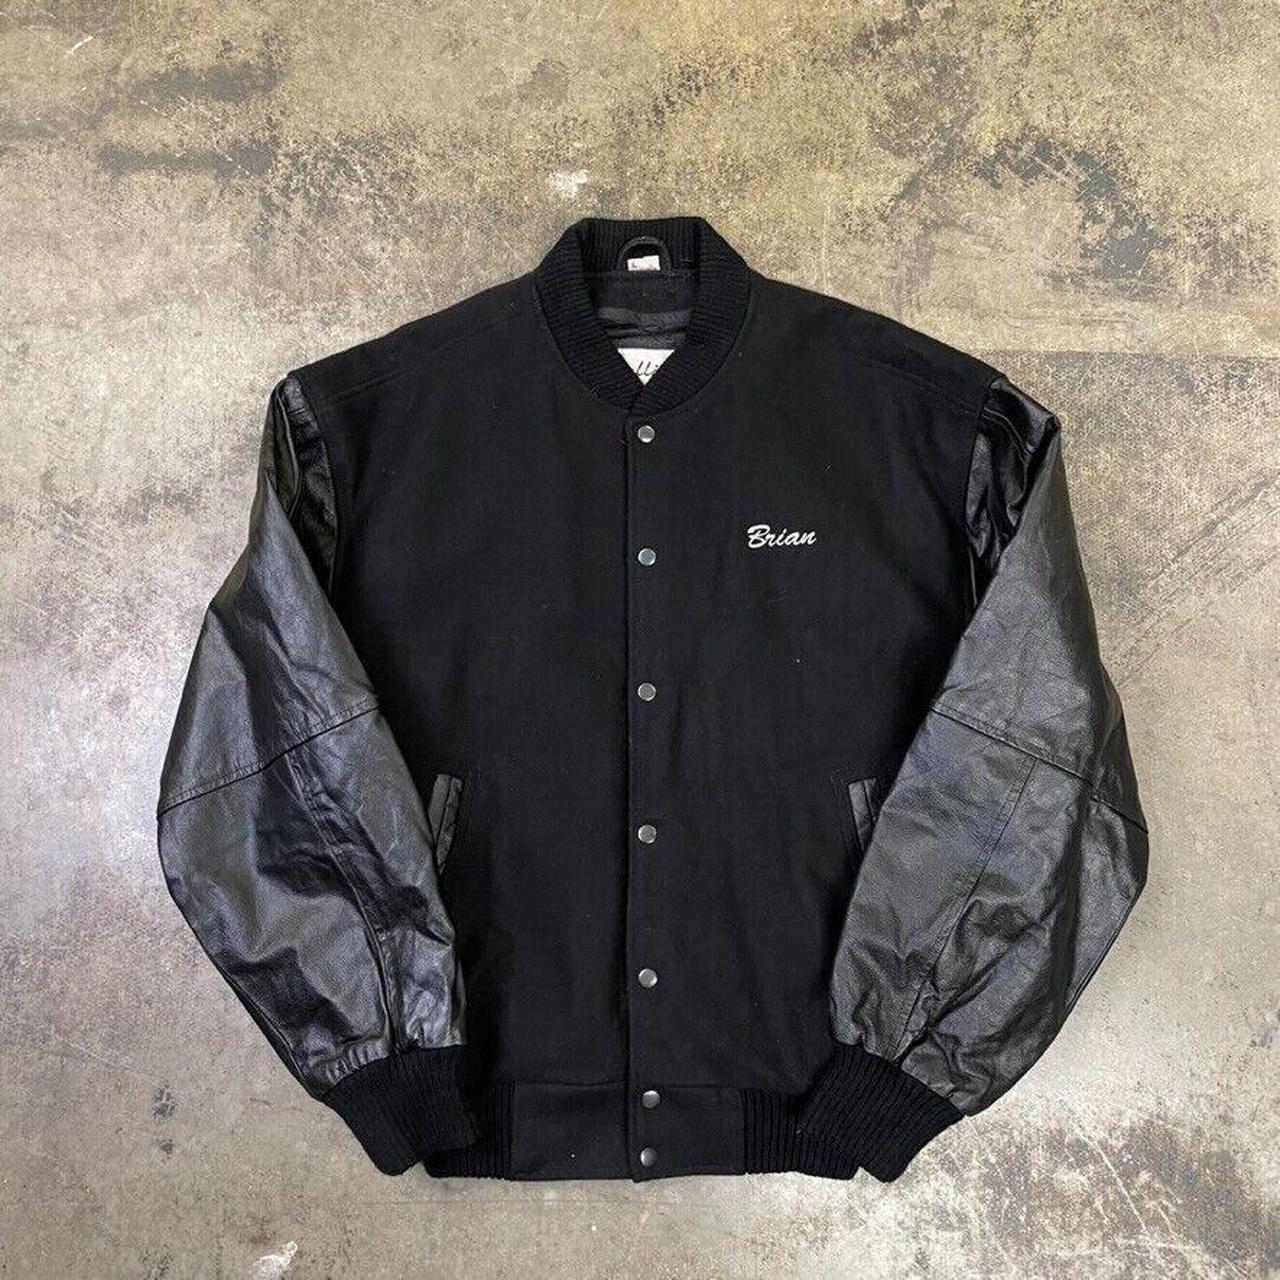 Bowling Bomber Jacket Vintage Leather 90s USA Coat,... - Depop